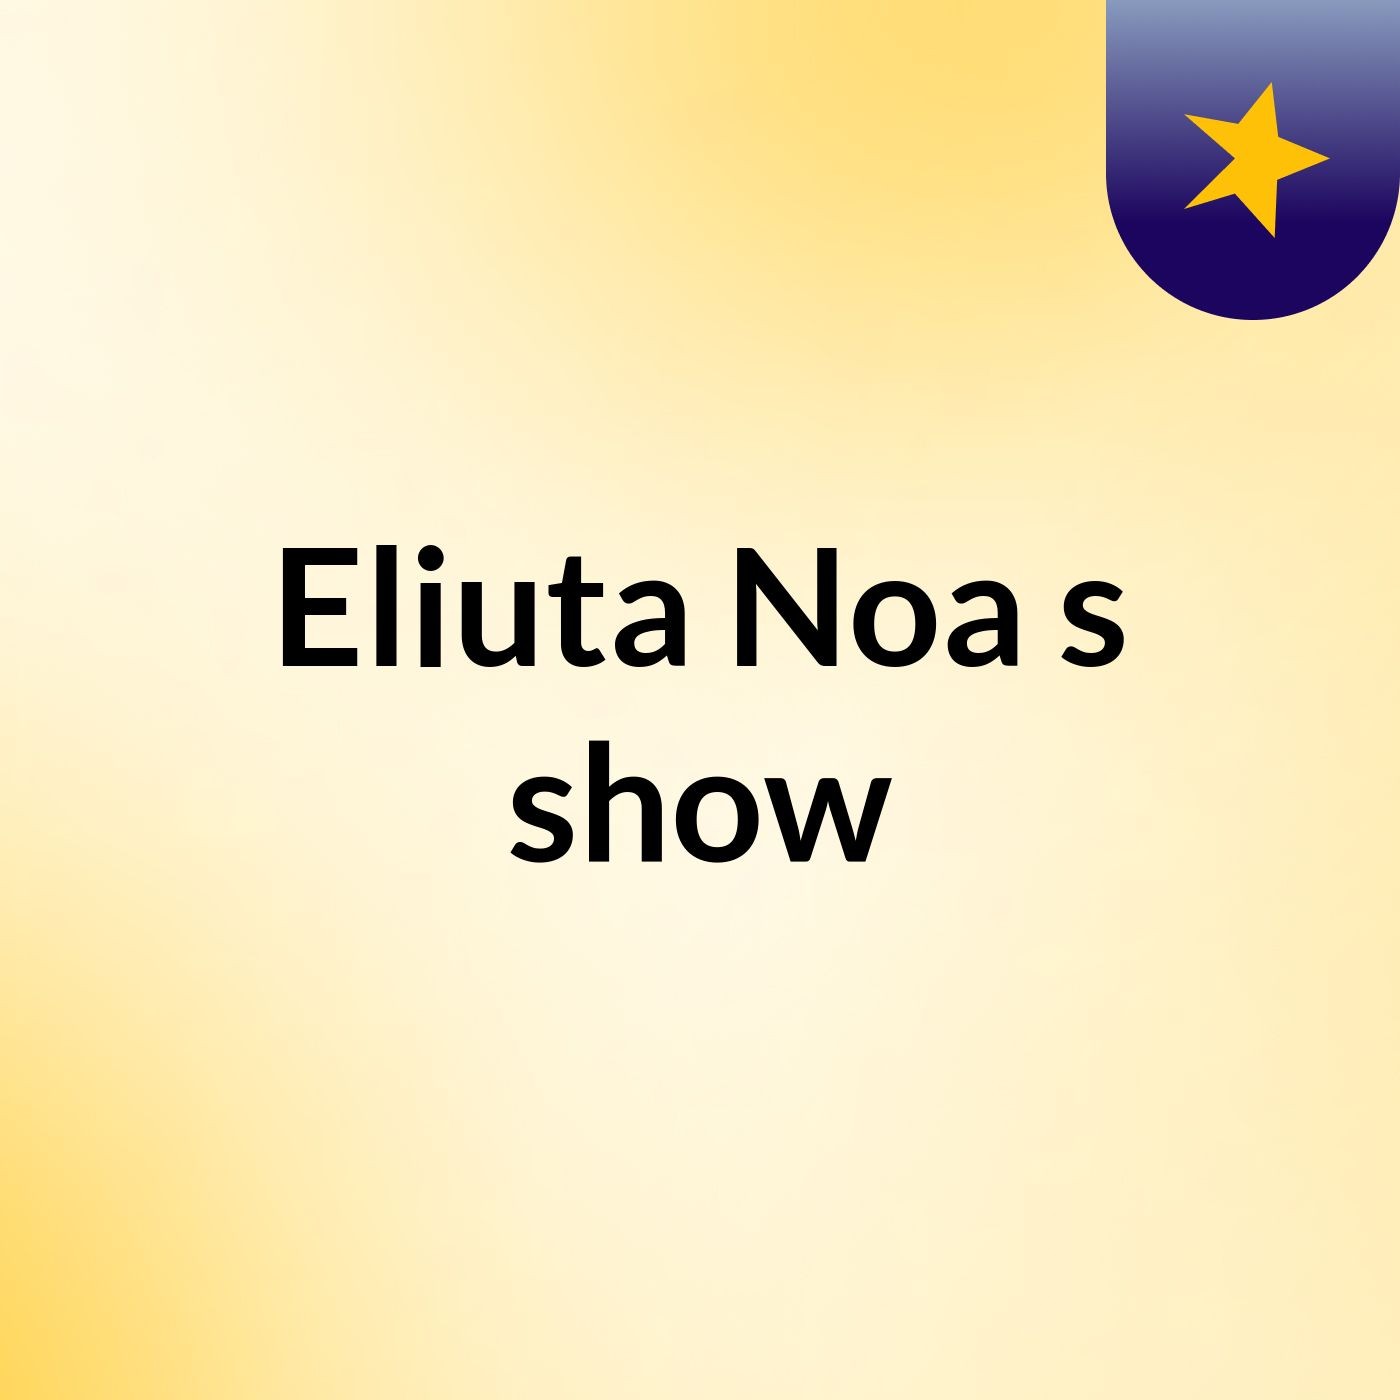 Eliuta Noa's show